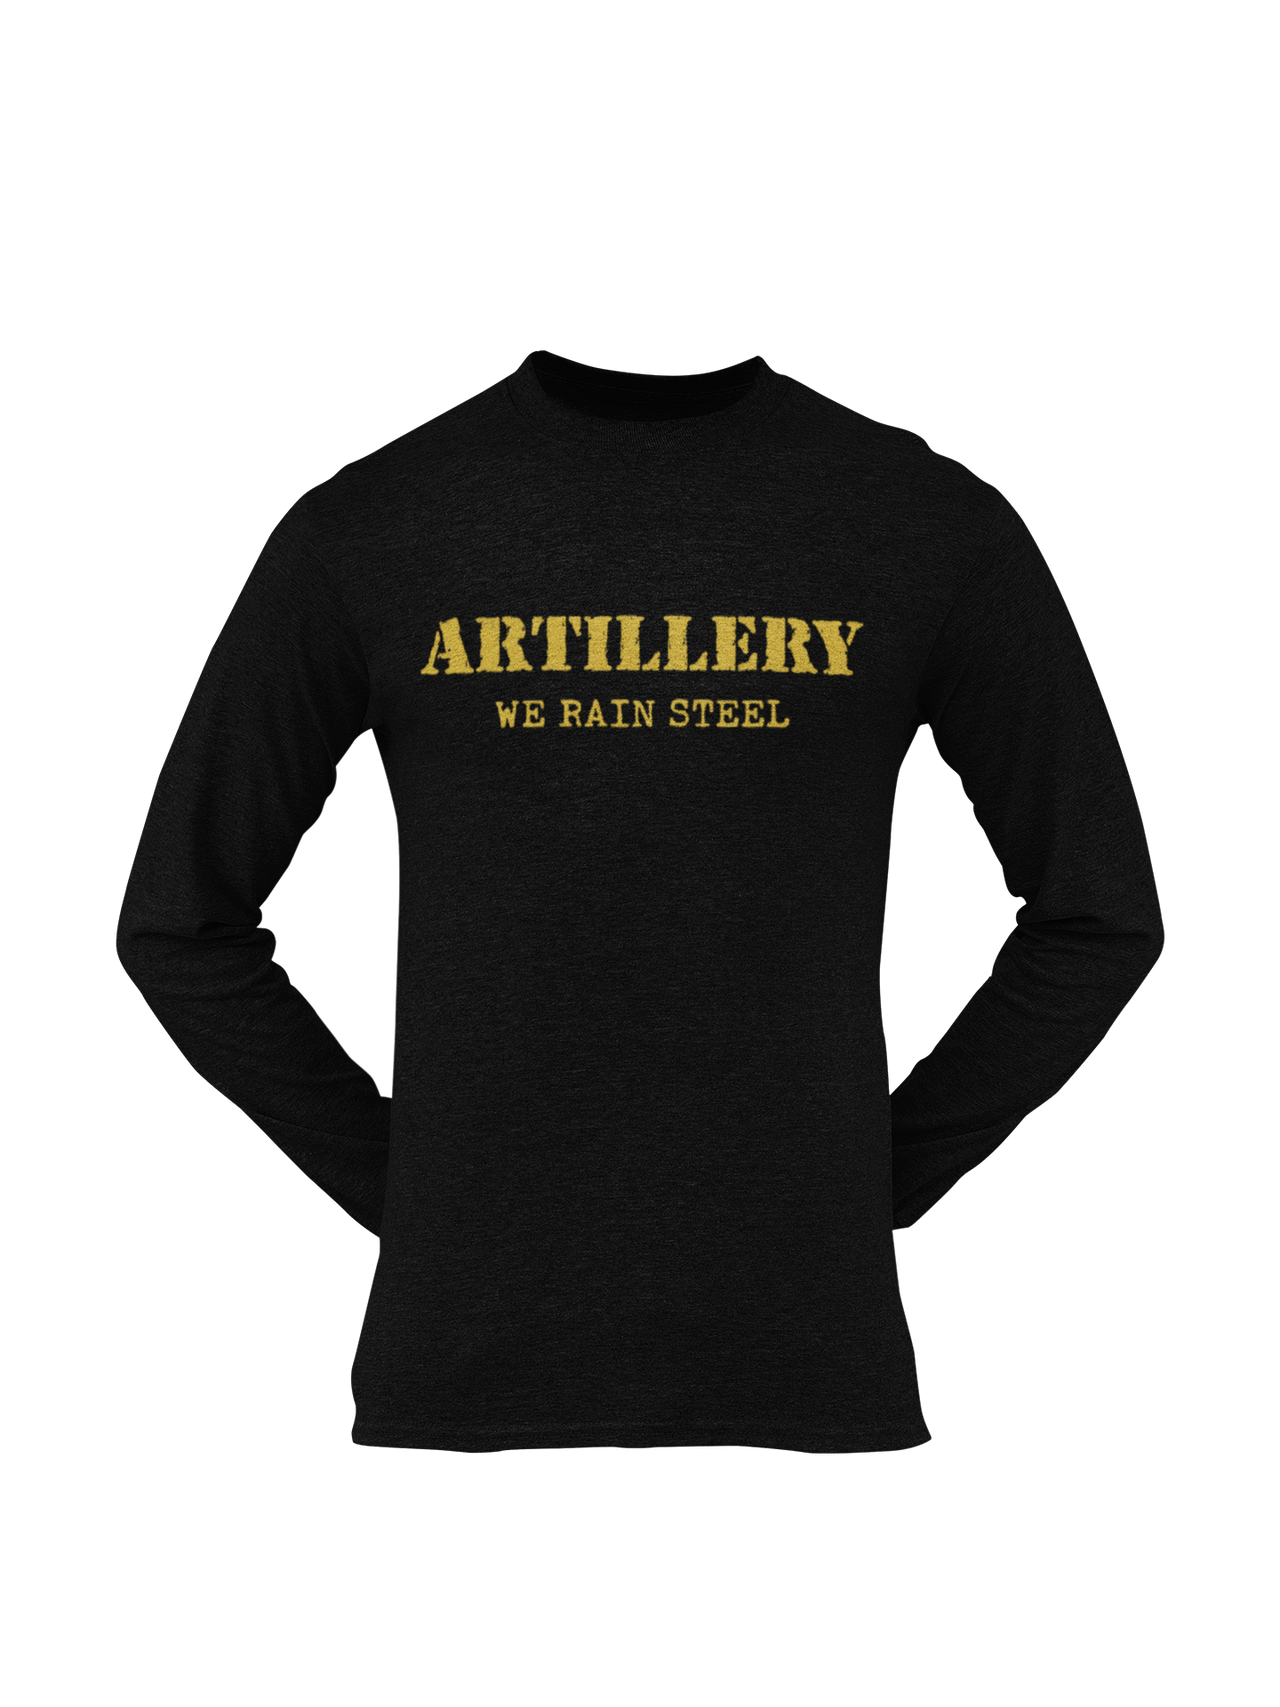 Artillery T-shirt - We Rain Steel (Men)